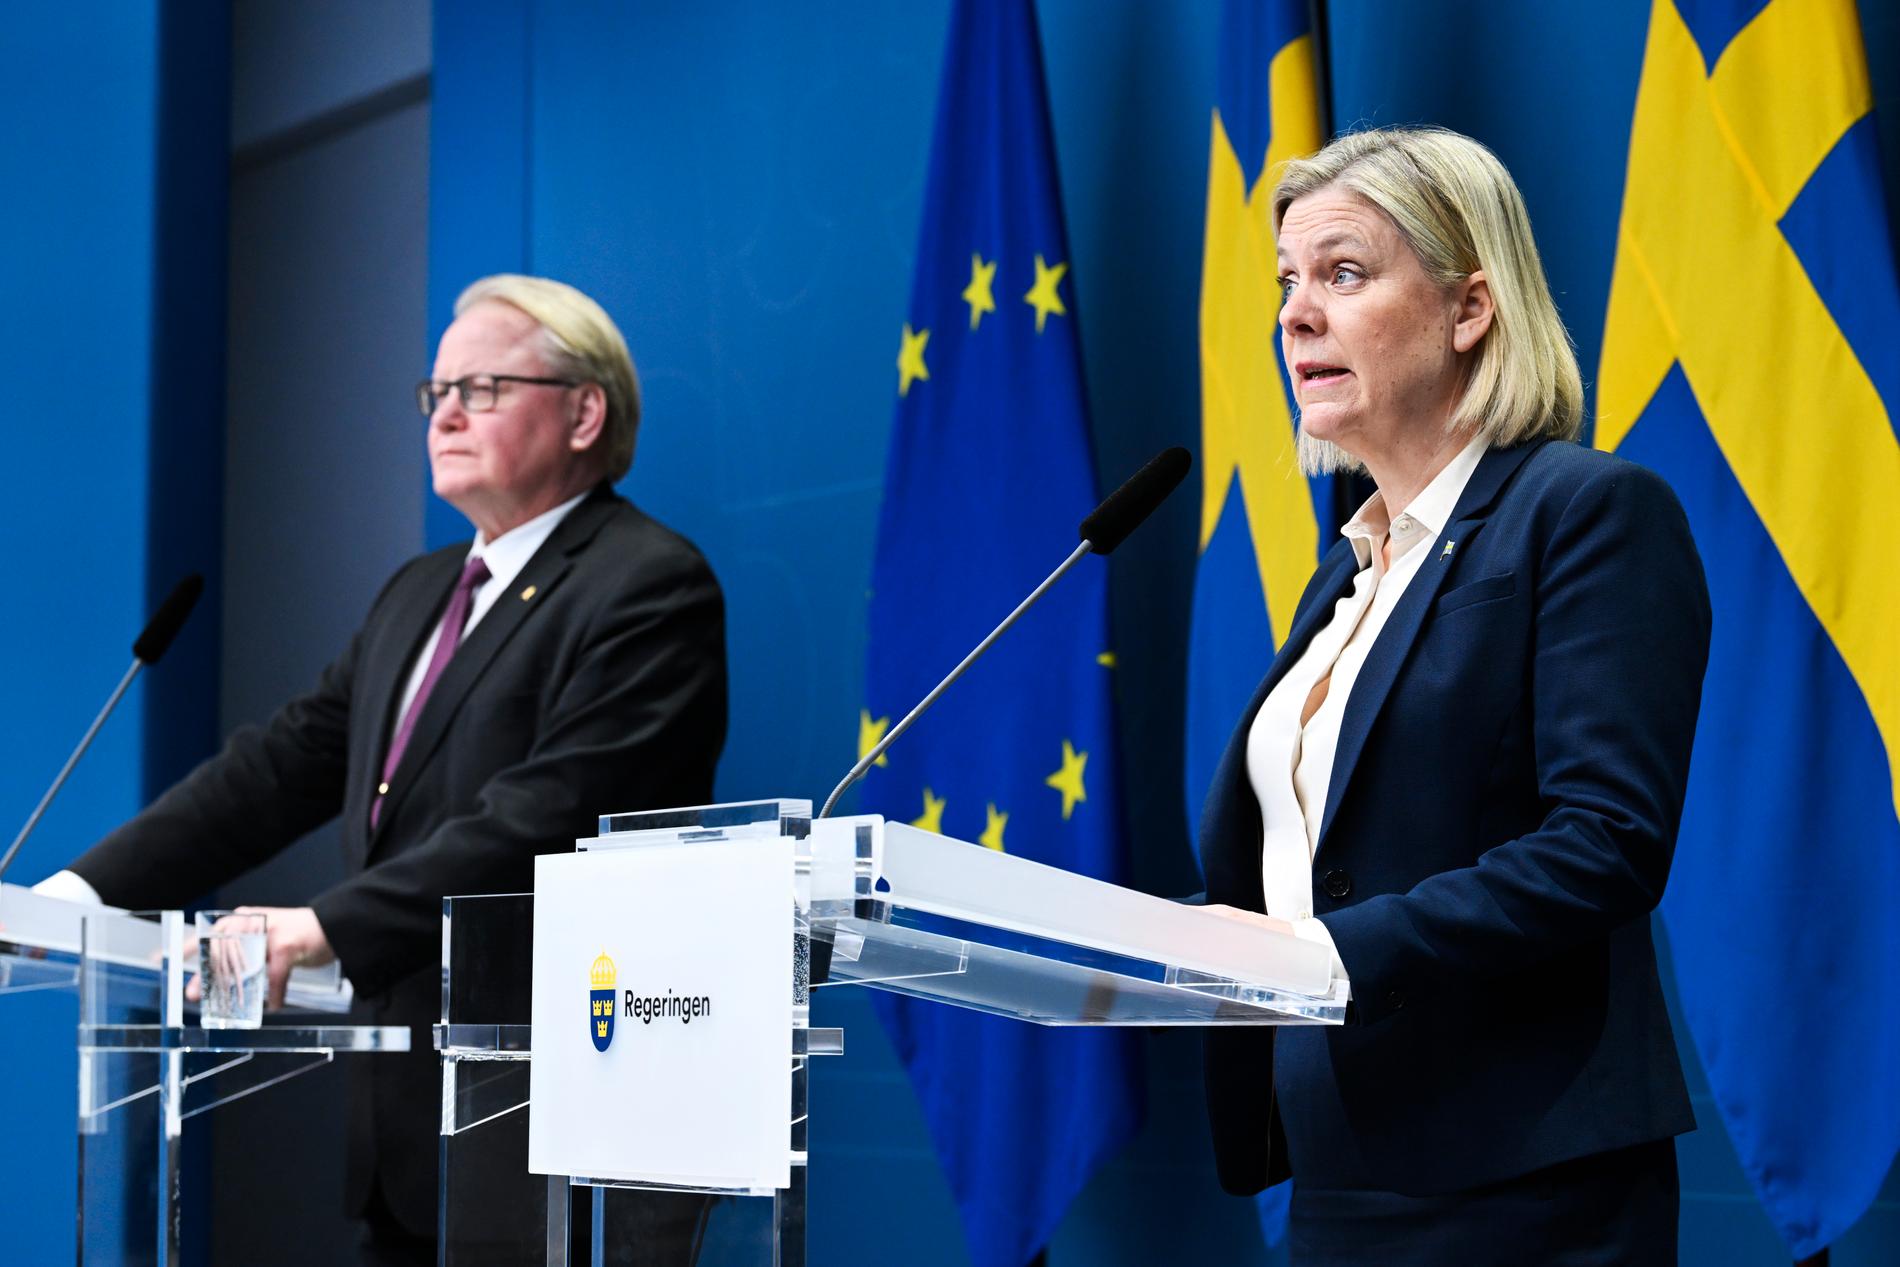 Försvarsminister Peter Hultqvist och statsminister Magdalena Andersson håller pressträff med anledning av att Sverige skickar vapen till Ukraina, den 27 februari 2022.